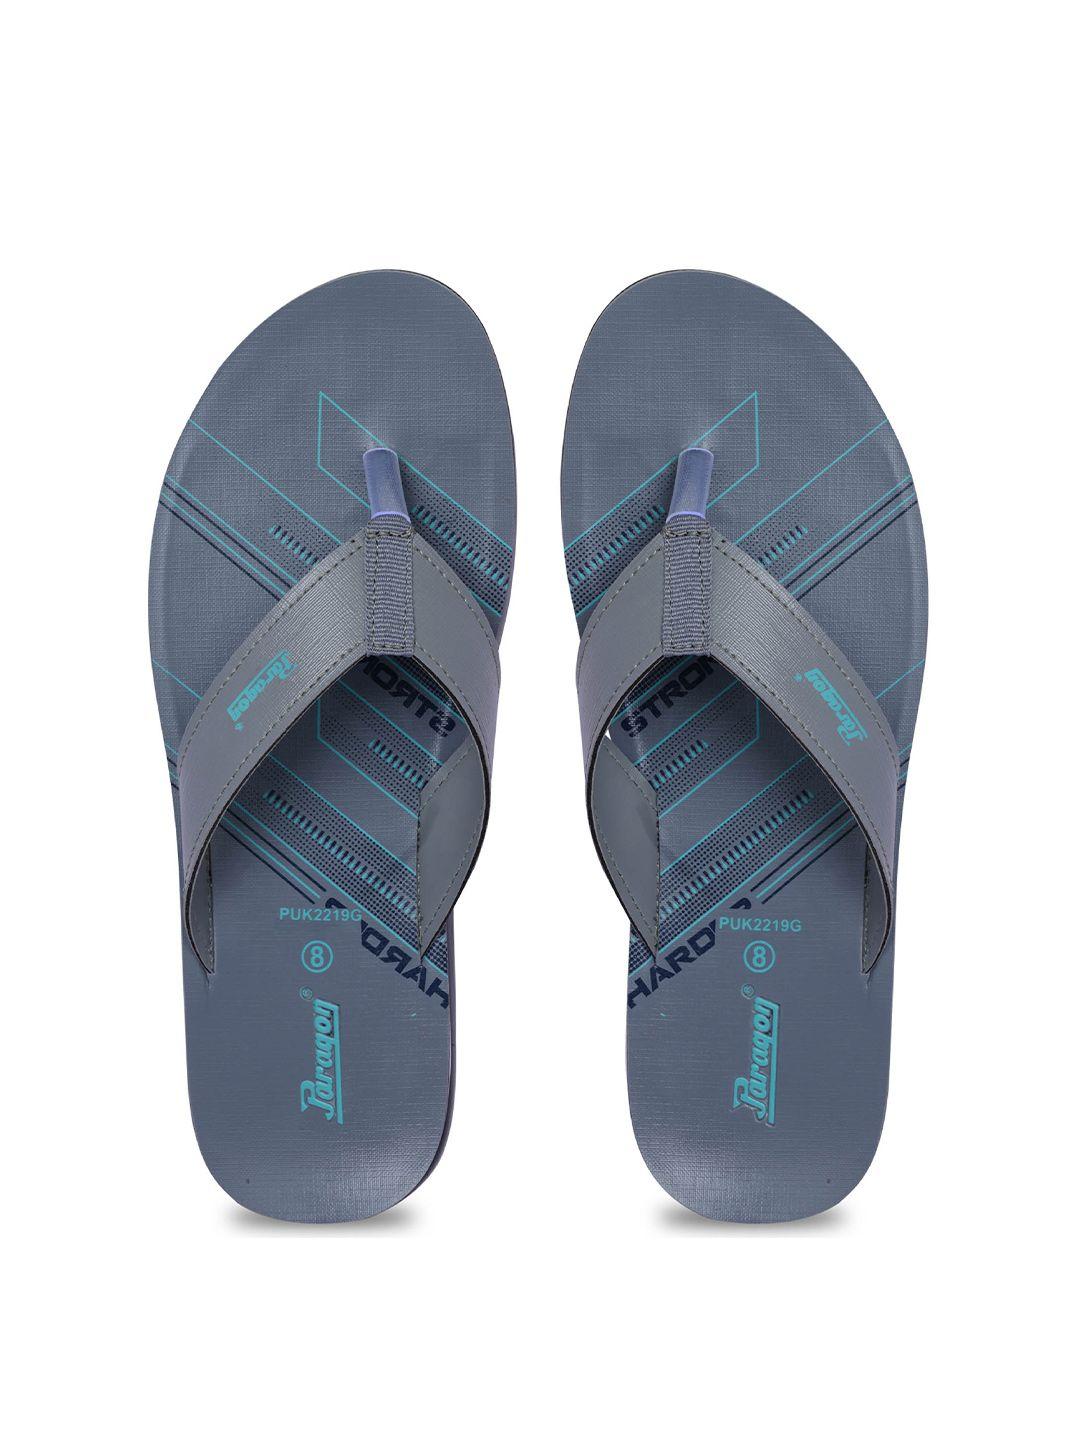 paragon-men-grey-&-blue-printed-thong-flip-flops